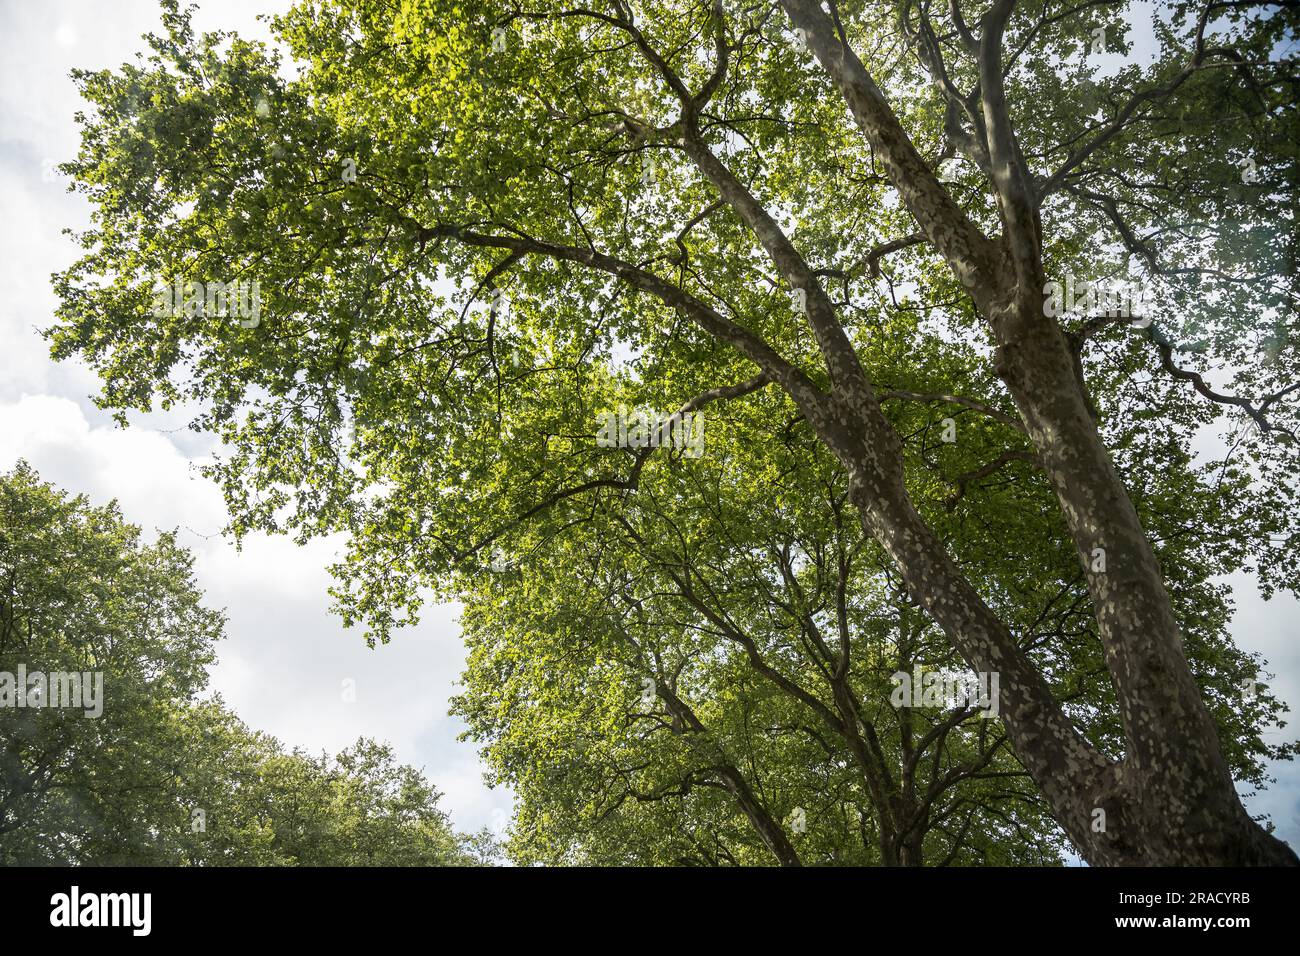 Ein ebener Baum mit Zweigen voller Blätter, der seine Pracht im Frühling zeigt. Bild von unten mit dem Himmel im Hintergrund. Stockfoto